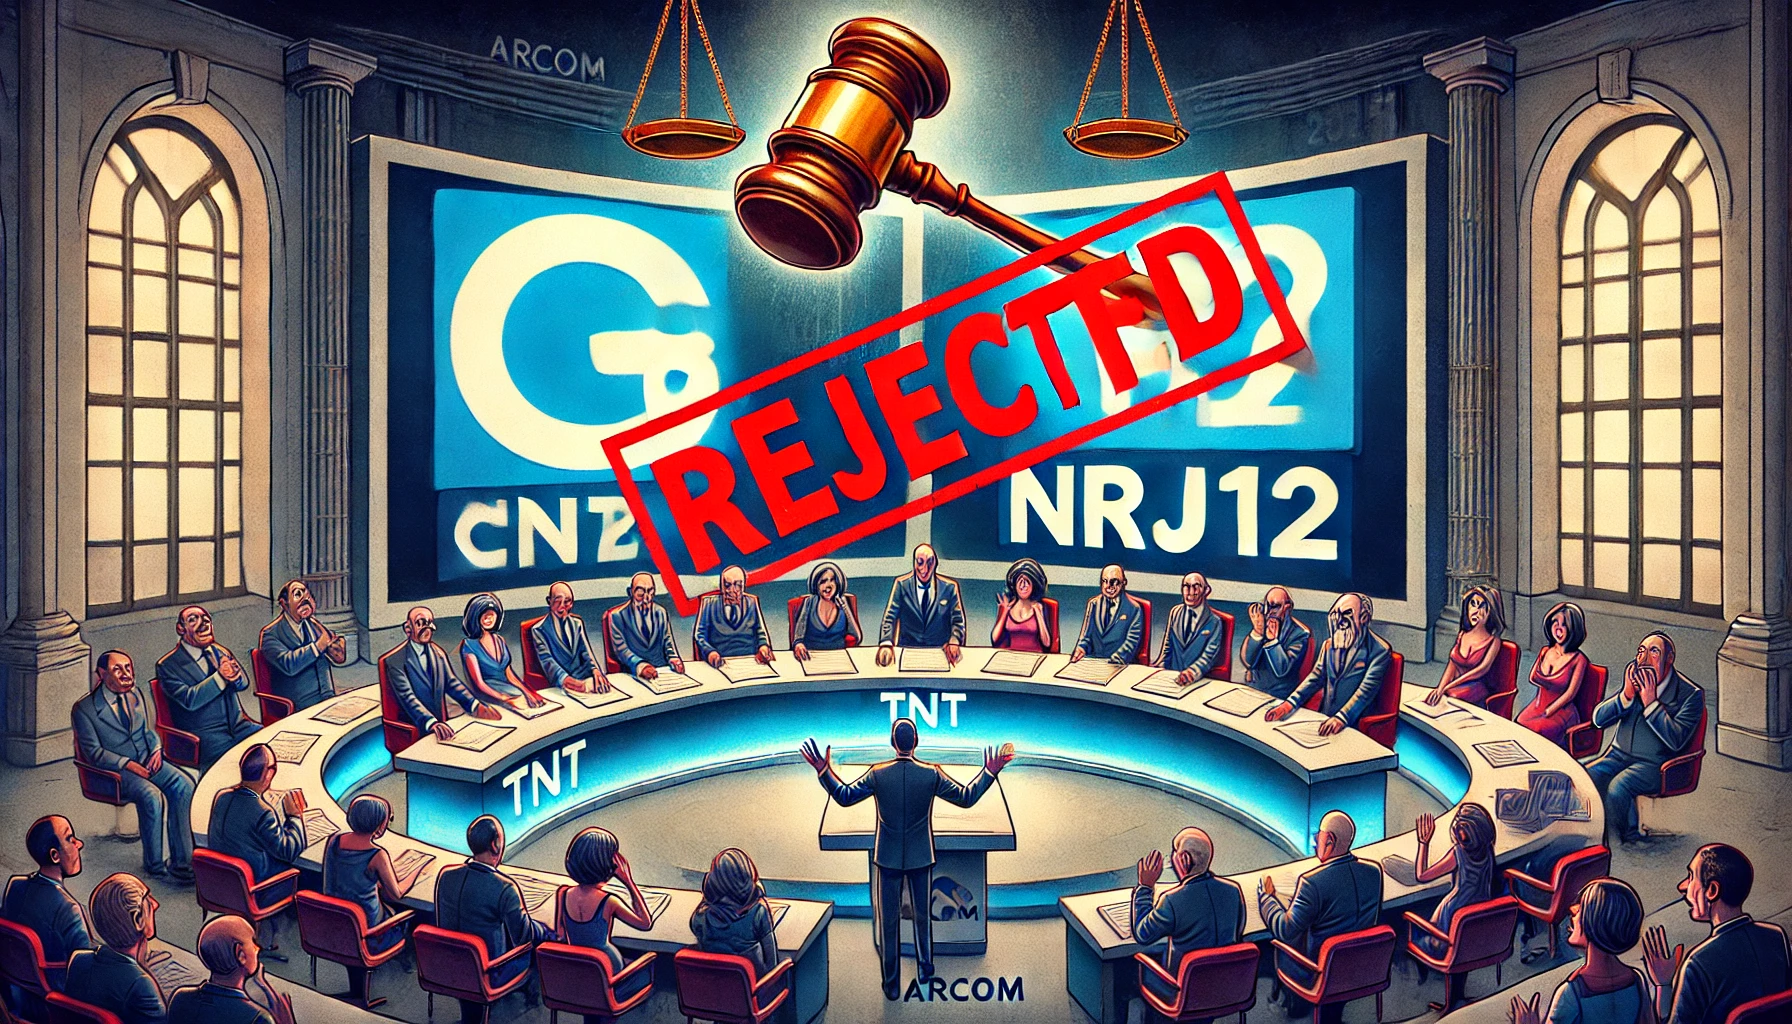 L'image montre un moment dramatique dans l'industrie de la télévision française, avec les candidatures de C8 et NRJ12 rejetées pour les fréquences TNT en 2025, créant un choc et une déception visibles dans un studio de télévision.